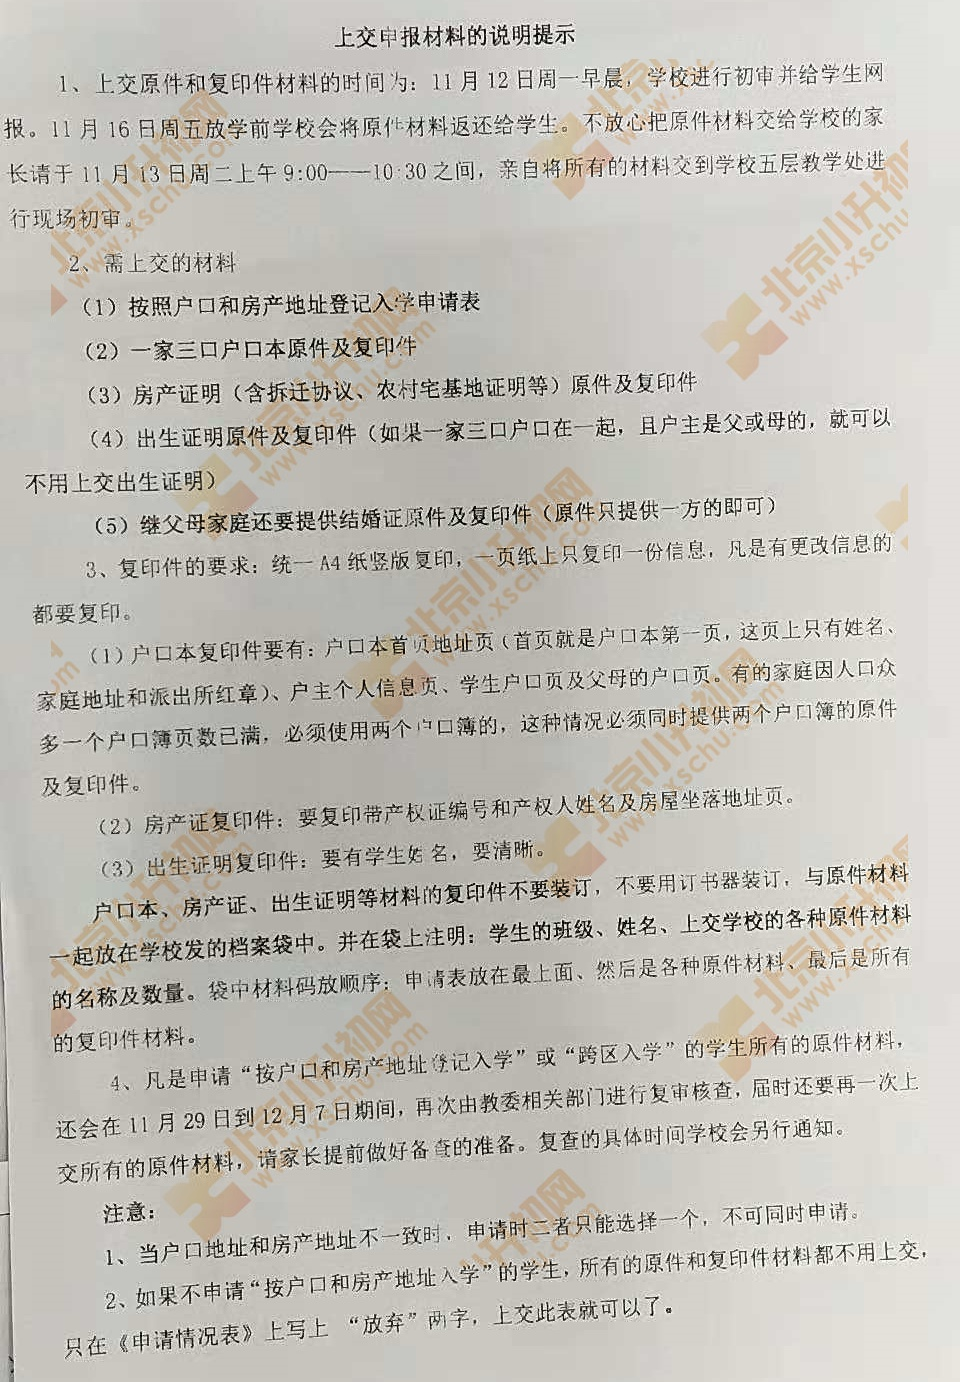 2019朝阳小升初单校划片、跨区登记入学申报材料提交要求1